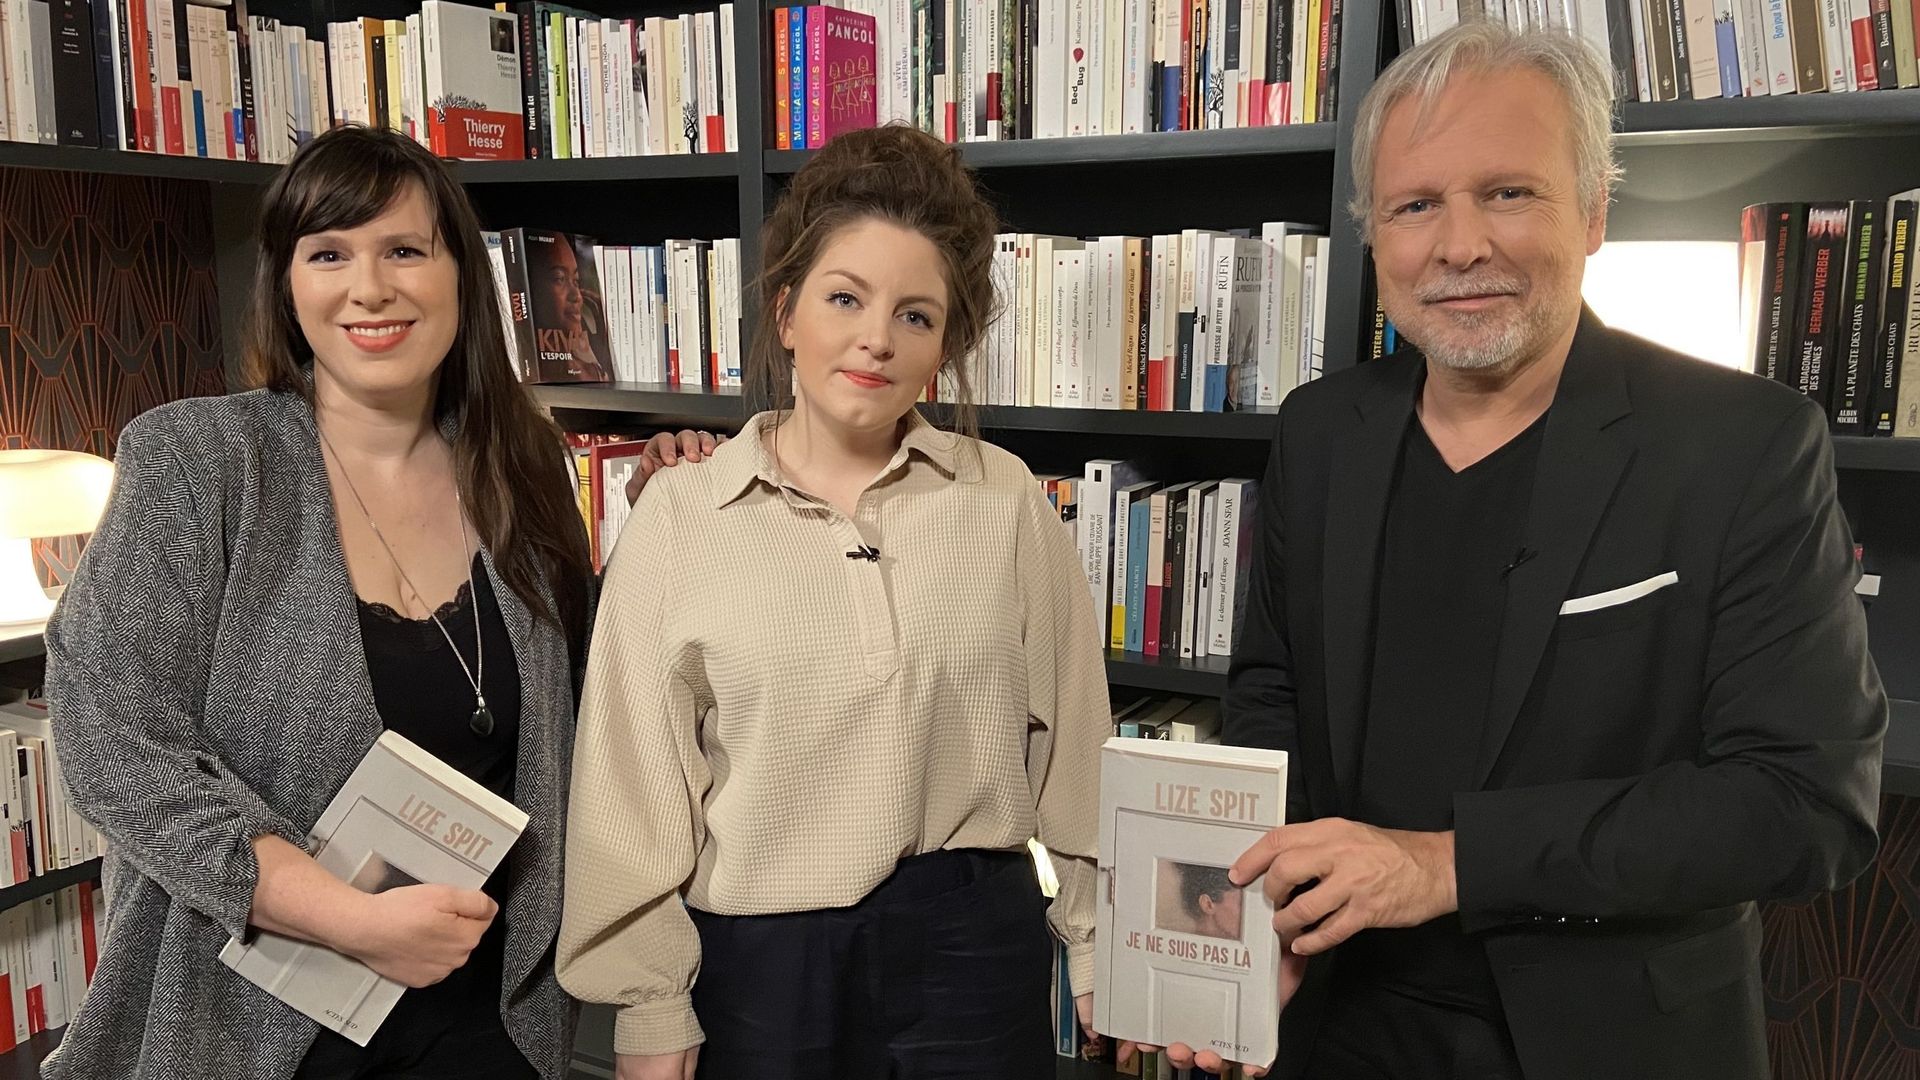 L'autrice Lize Spit entourée de Lucile Poulain et de Thierry Bellefroid